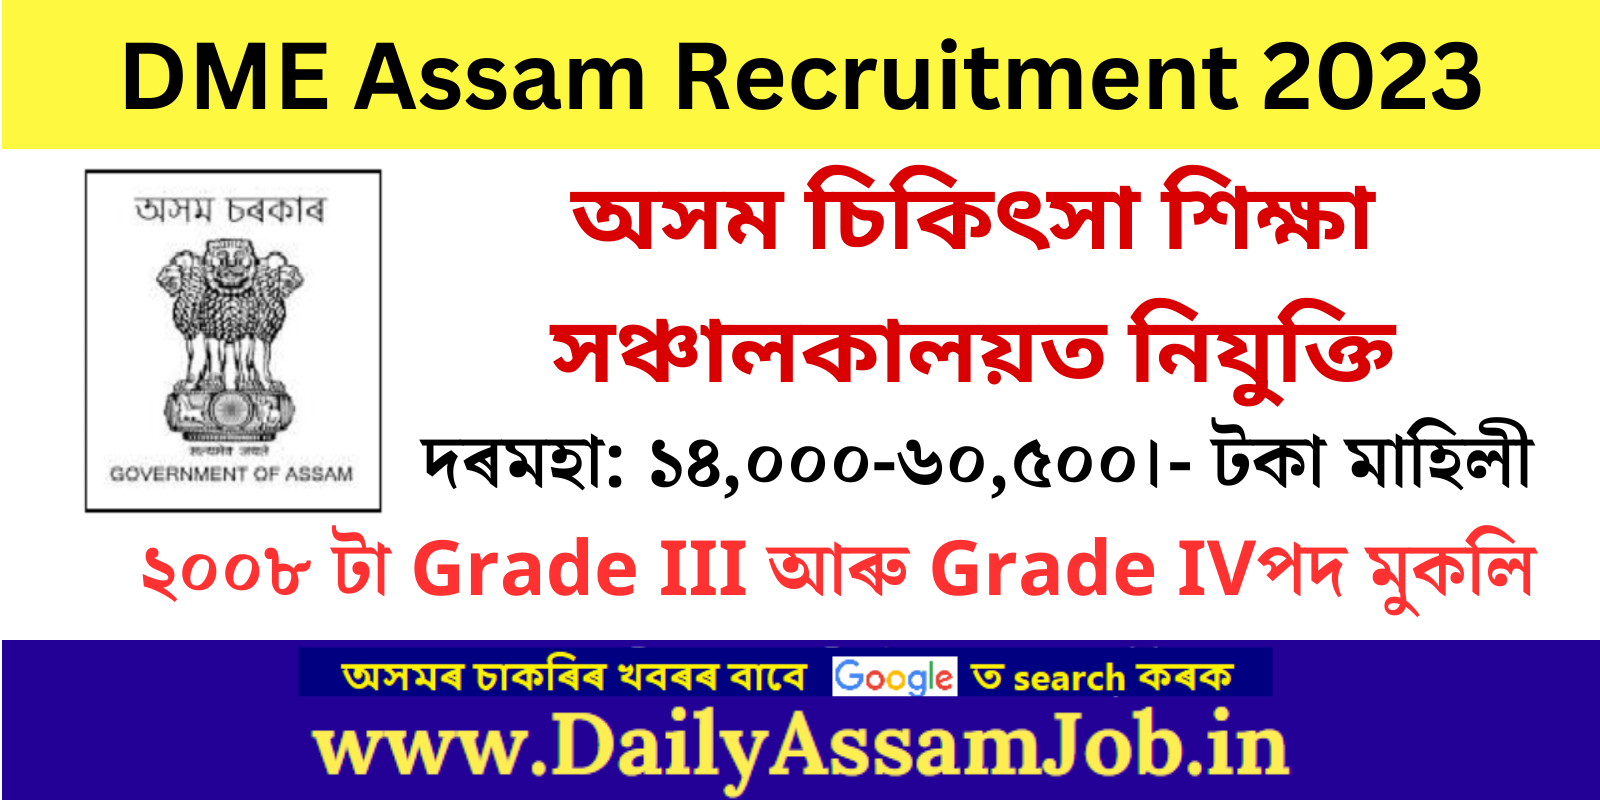 DME Assam Recruitment 2023 for 2008 Grade III & Grade IV Vacancy